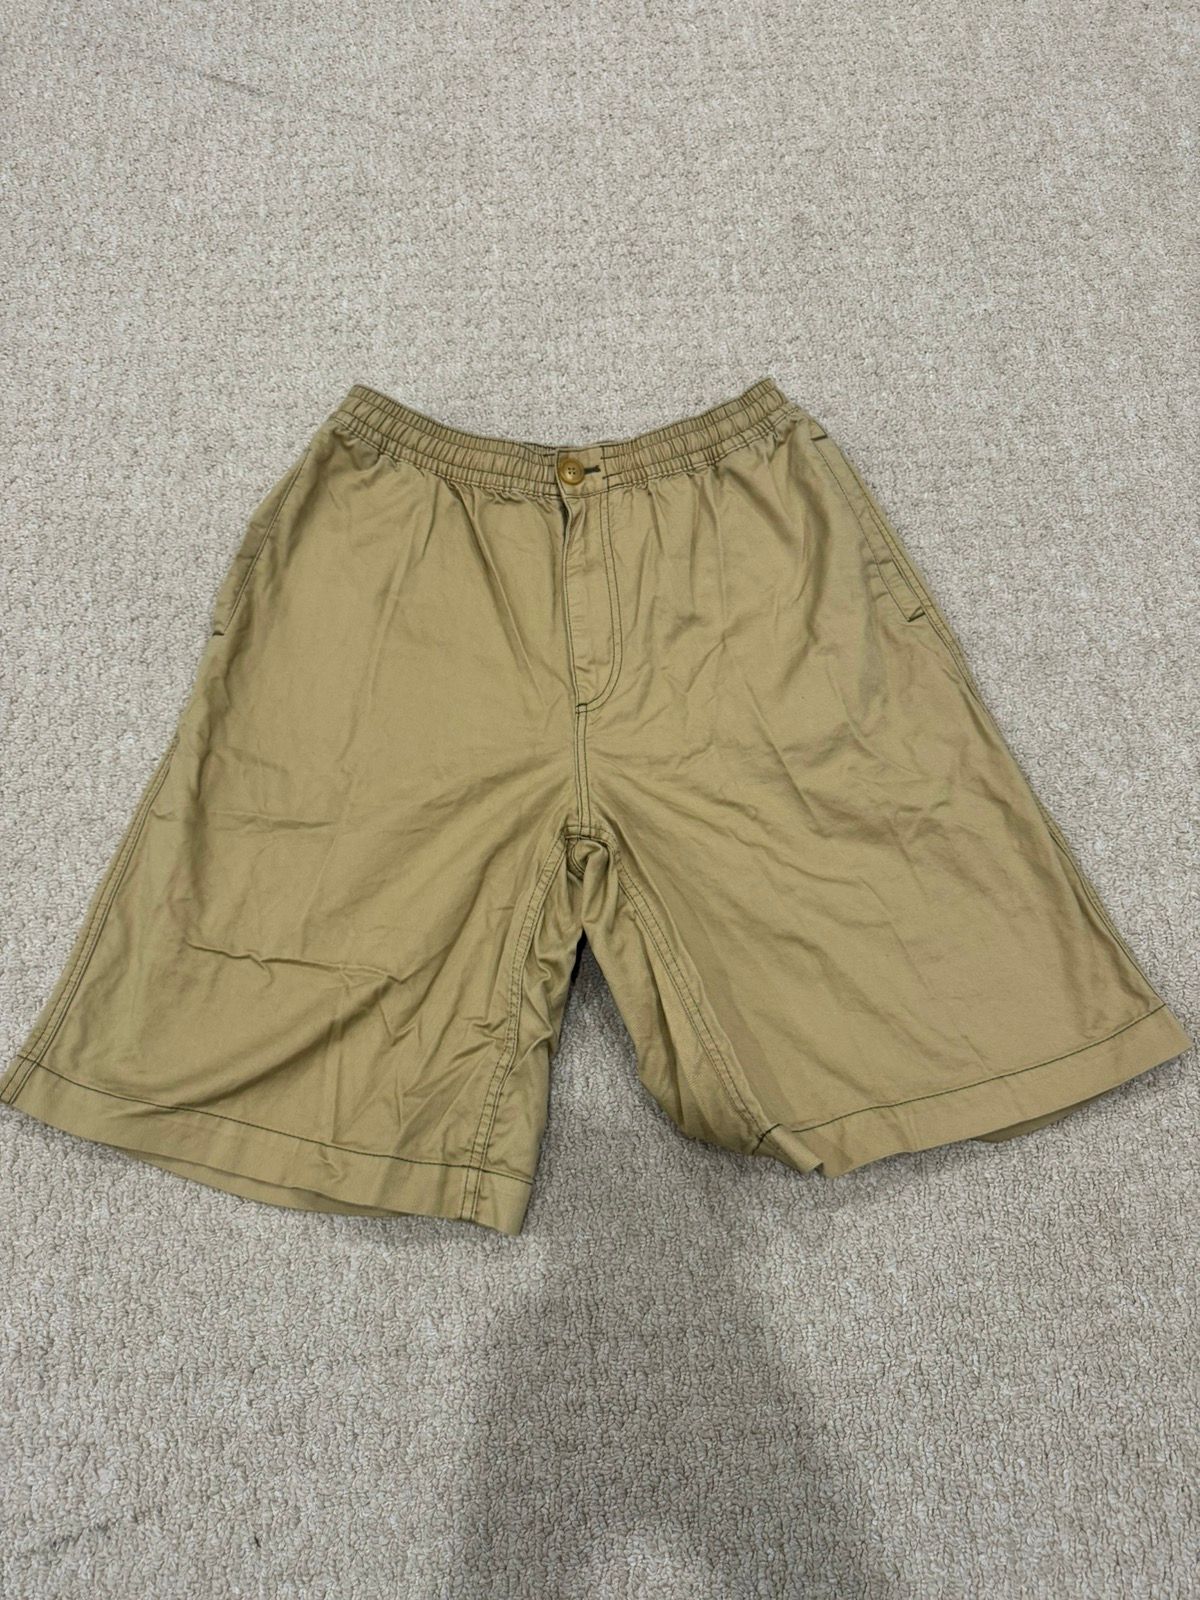 Uniqlo Marni Uniqlo Shorts Size US 32 / EU 48 - 1 Preview